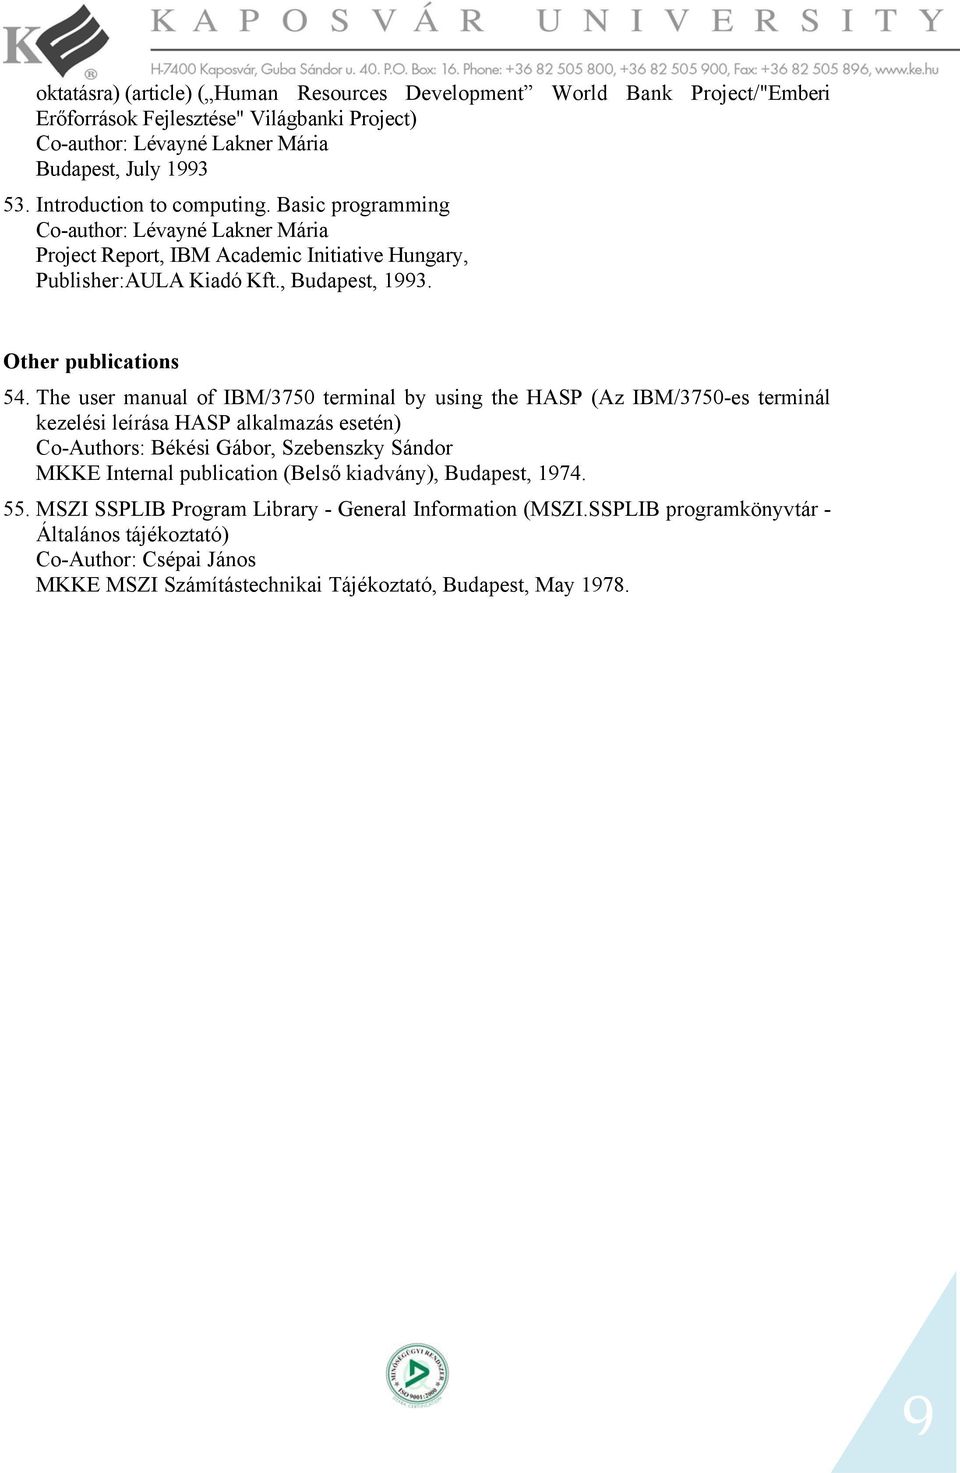 The user manual of IBM/3750 terminal by using the HASP (Az IBM/3750-es terminál kezelési leírása HASP alkalmazás esetén) Co-Authors: Békési Gábor, Szebenszky Sándor MKKE Internal publication (Belső